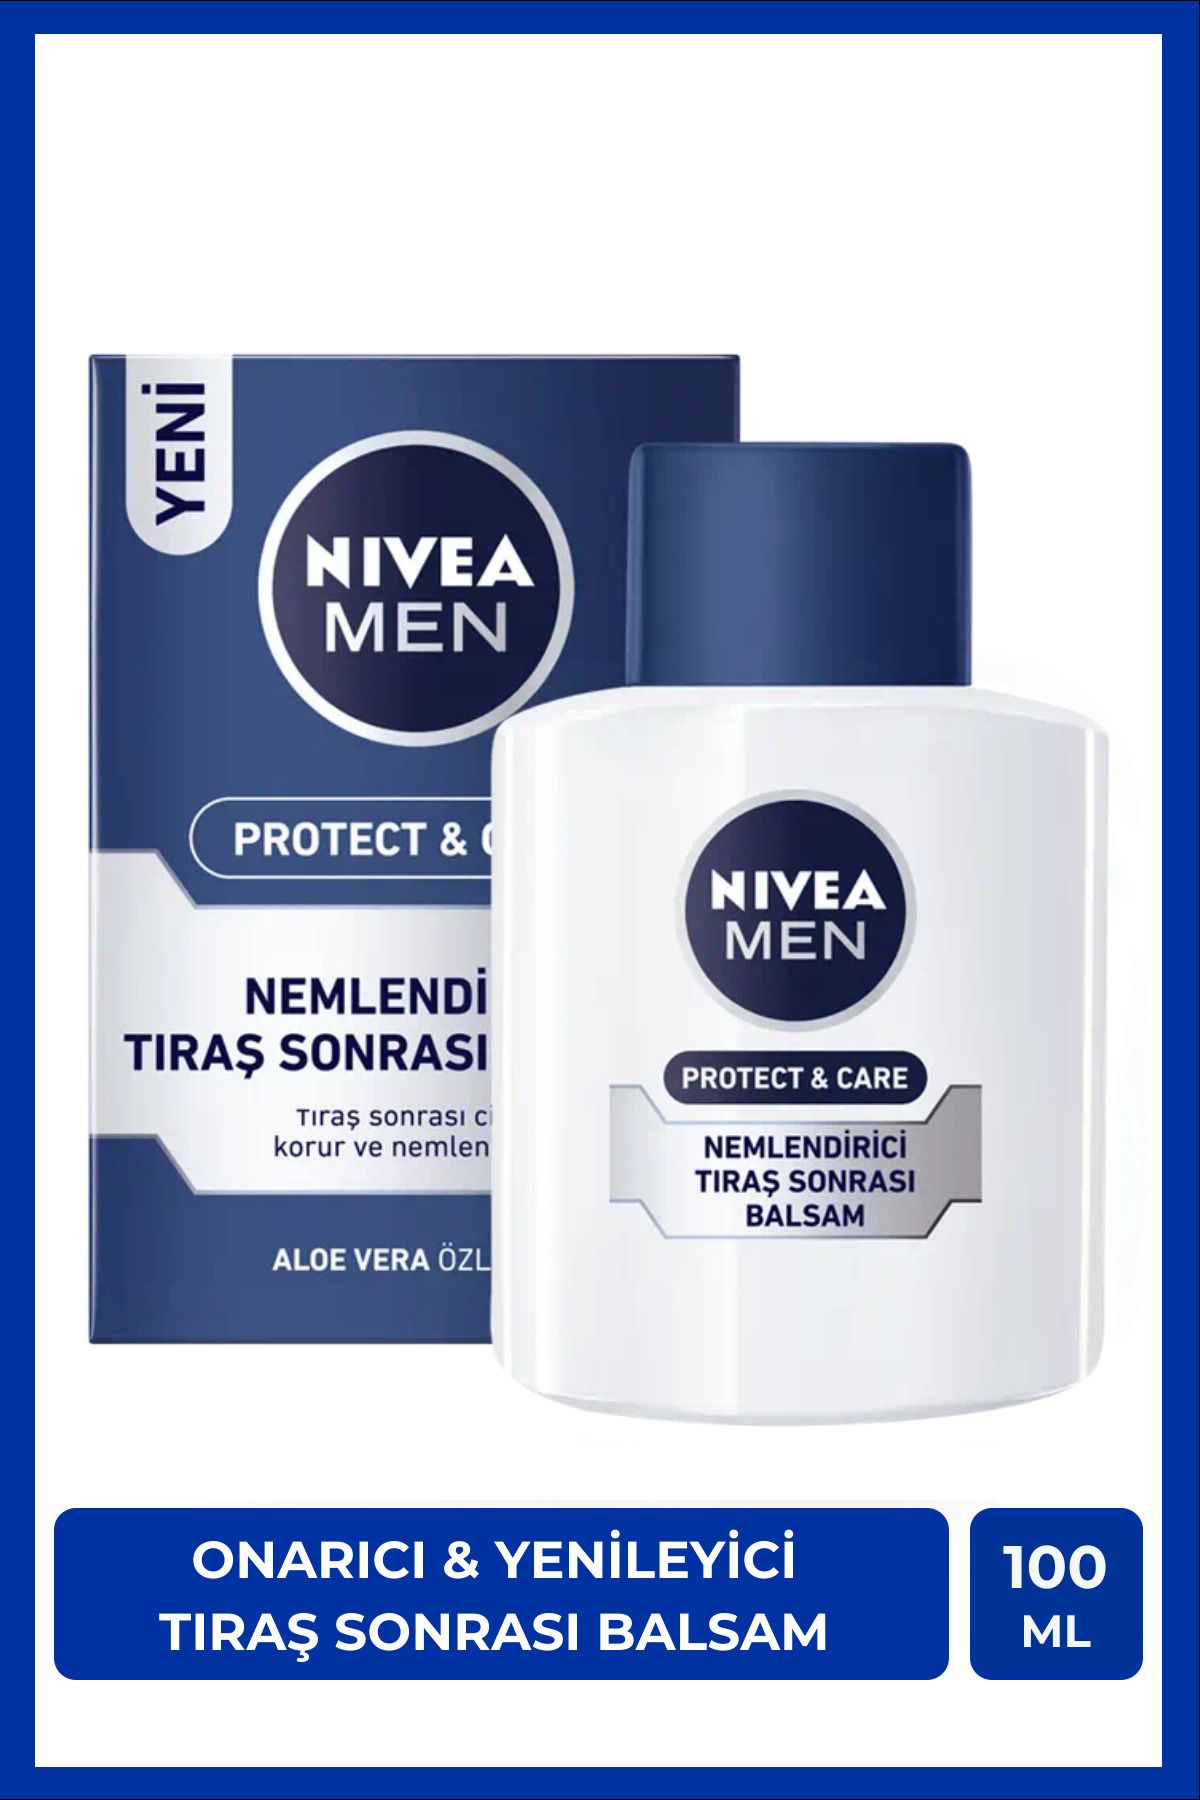 NIVEA MEN Erkek Tıraş Sonrası Balsam 100ml Protect&Care, Onarıcı, Yenileyici, Tahriş Önleyici, E Vitamini